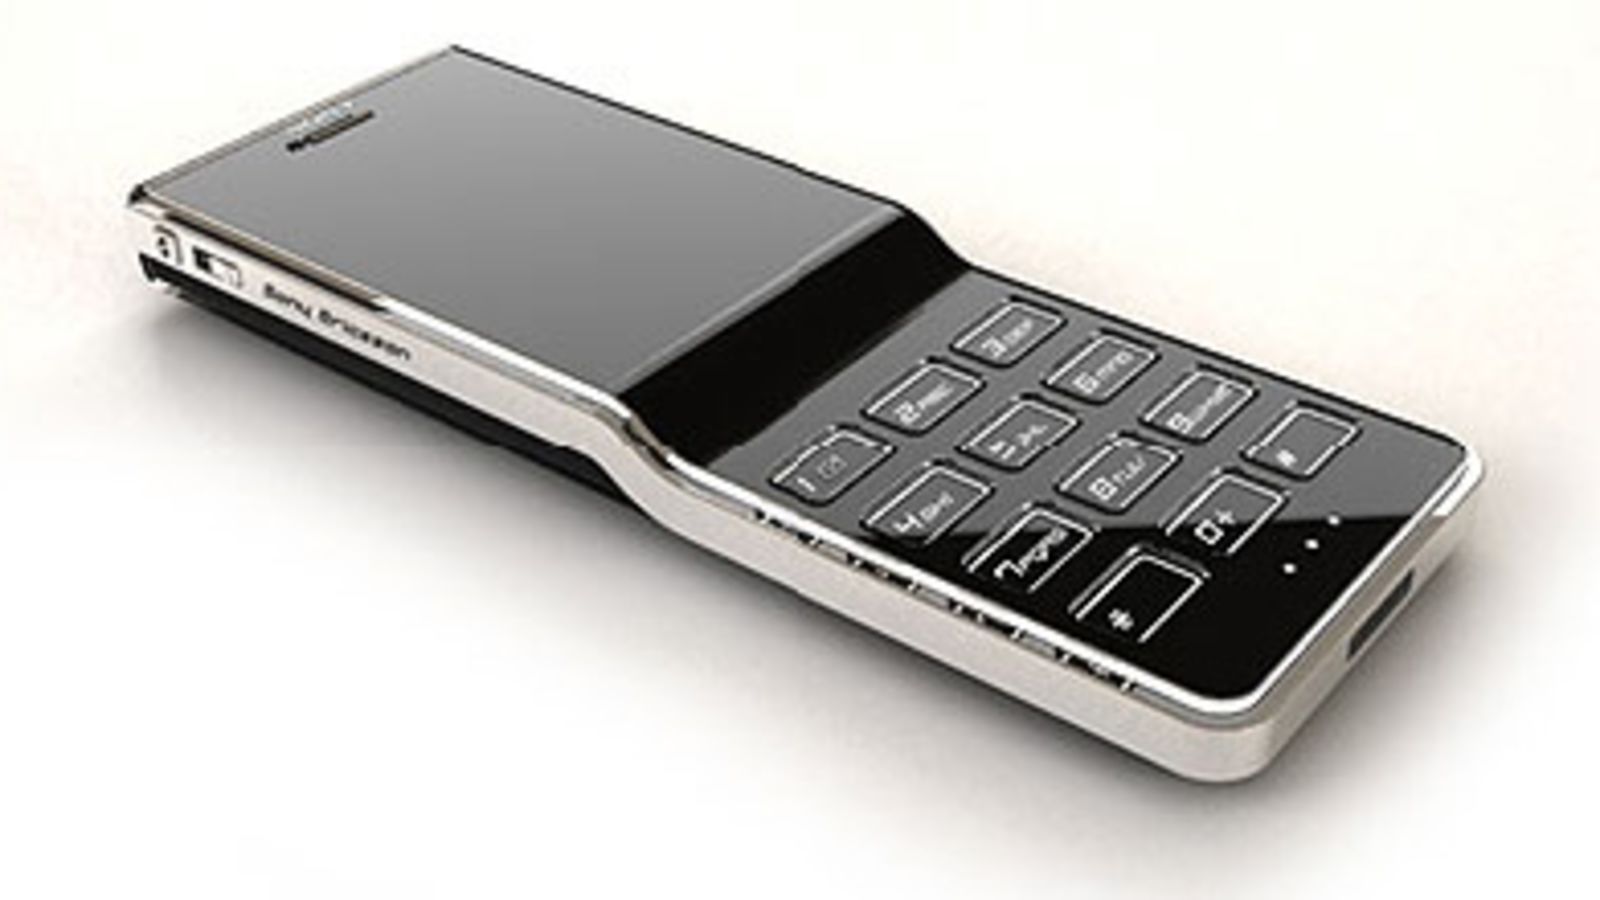 Sony Ericsson Black Diamon